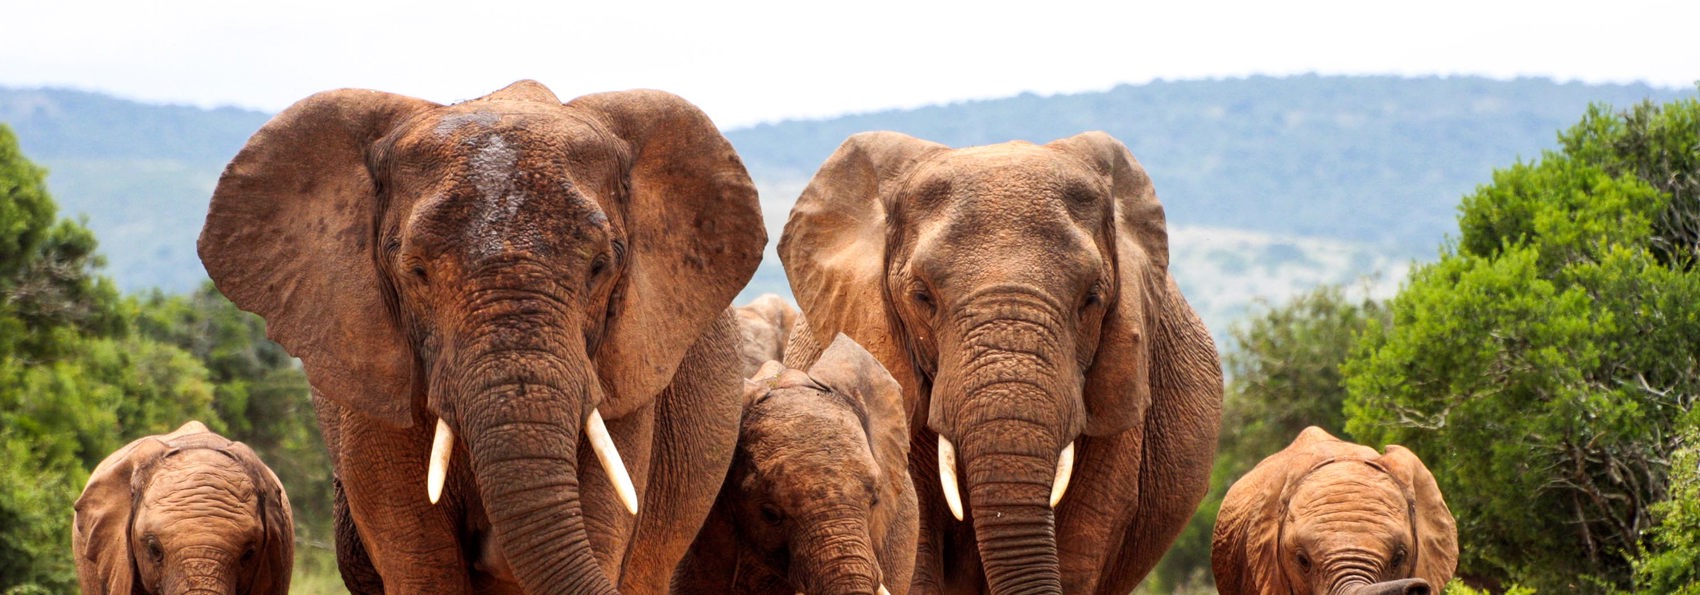 sydafrika - elephant national park_elefant_01